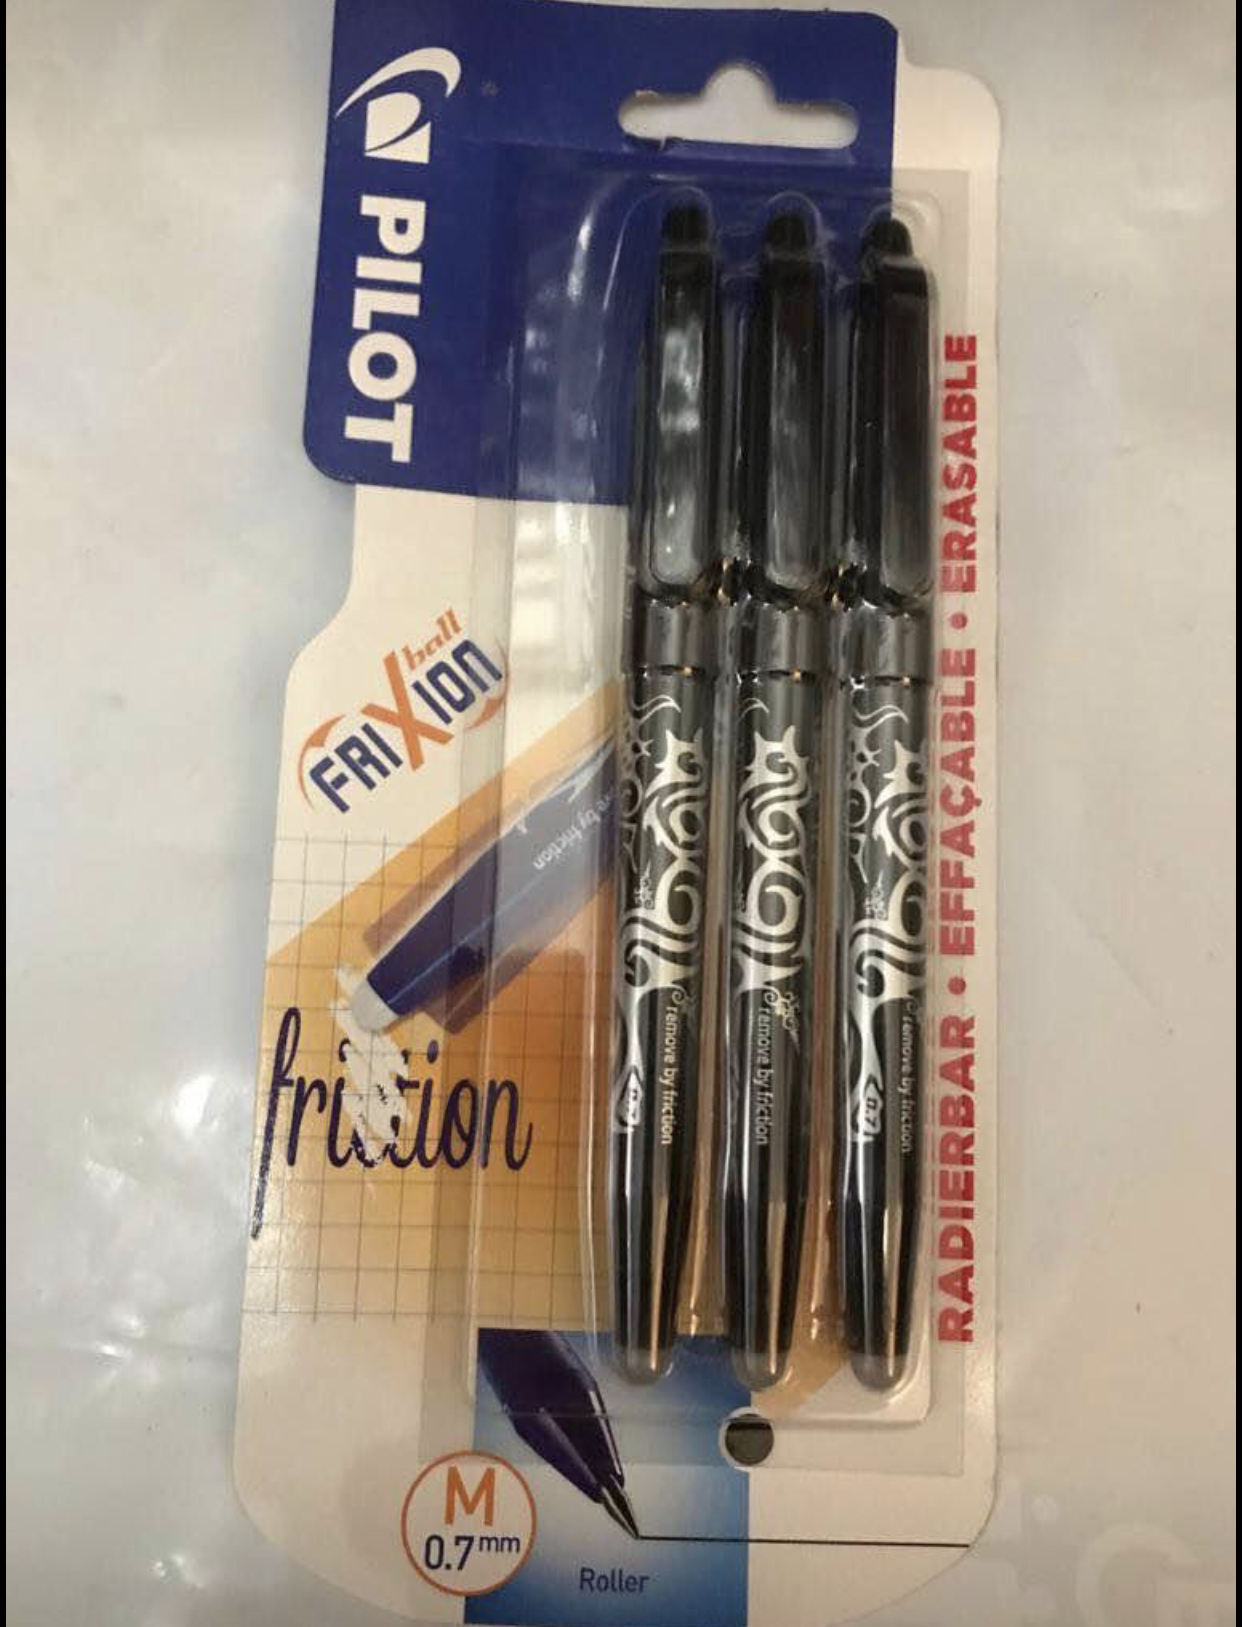 Pilot frixion erasable pens